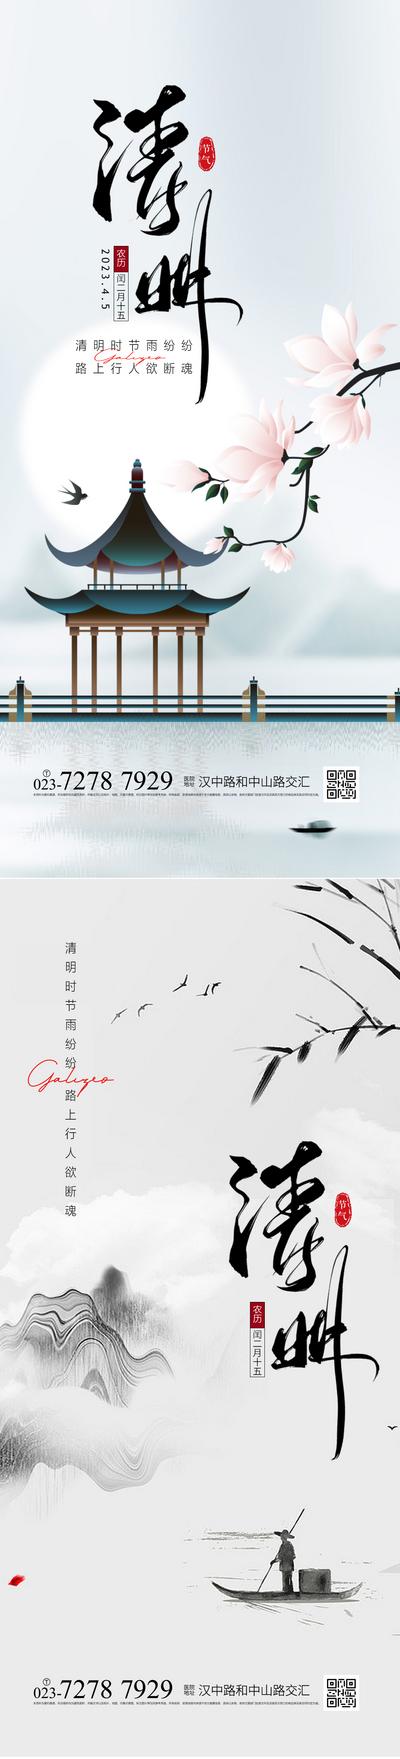 南门网 广告 海报 节日 清明节 公历节日 清明 中式 庭院